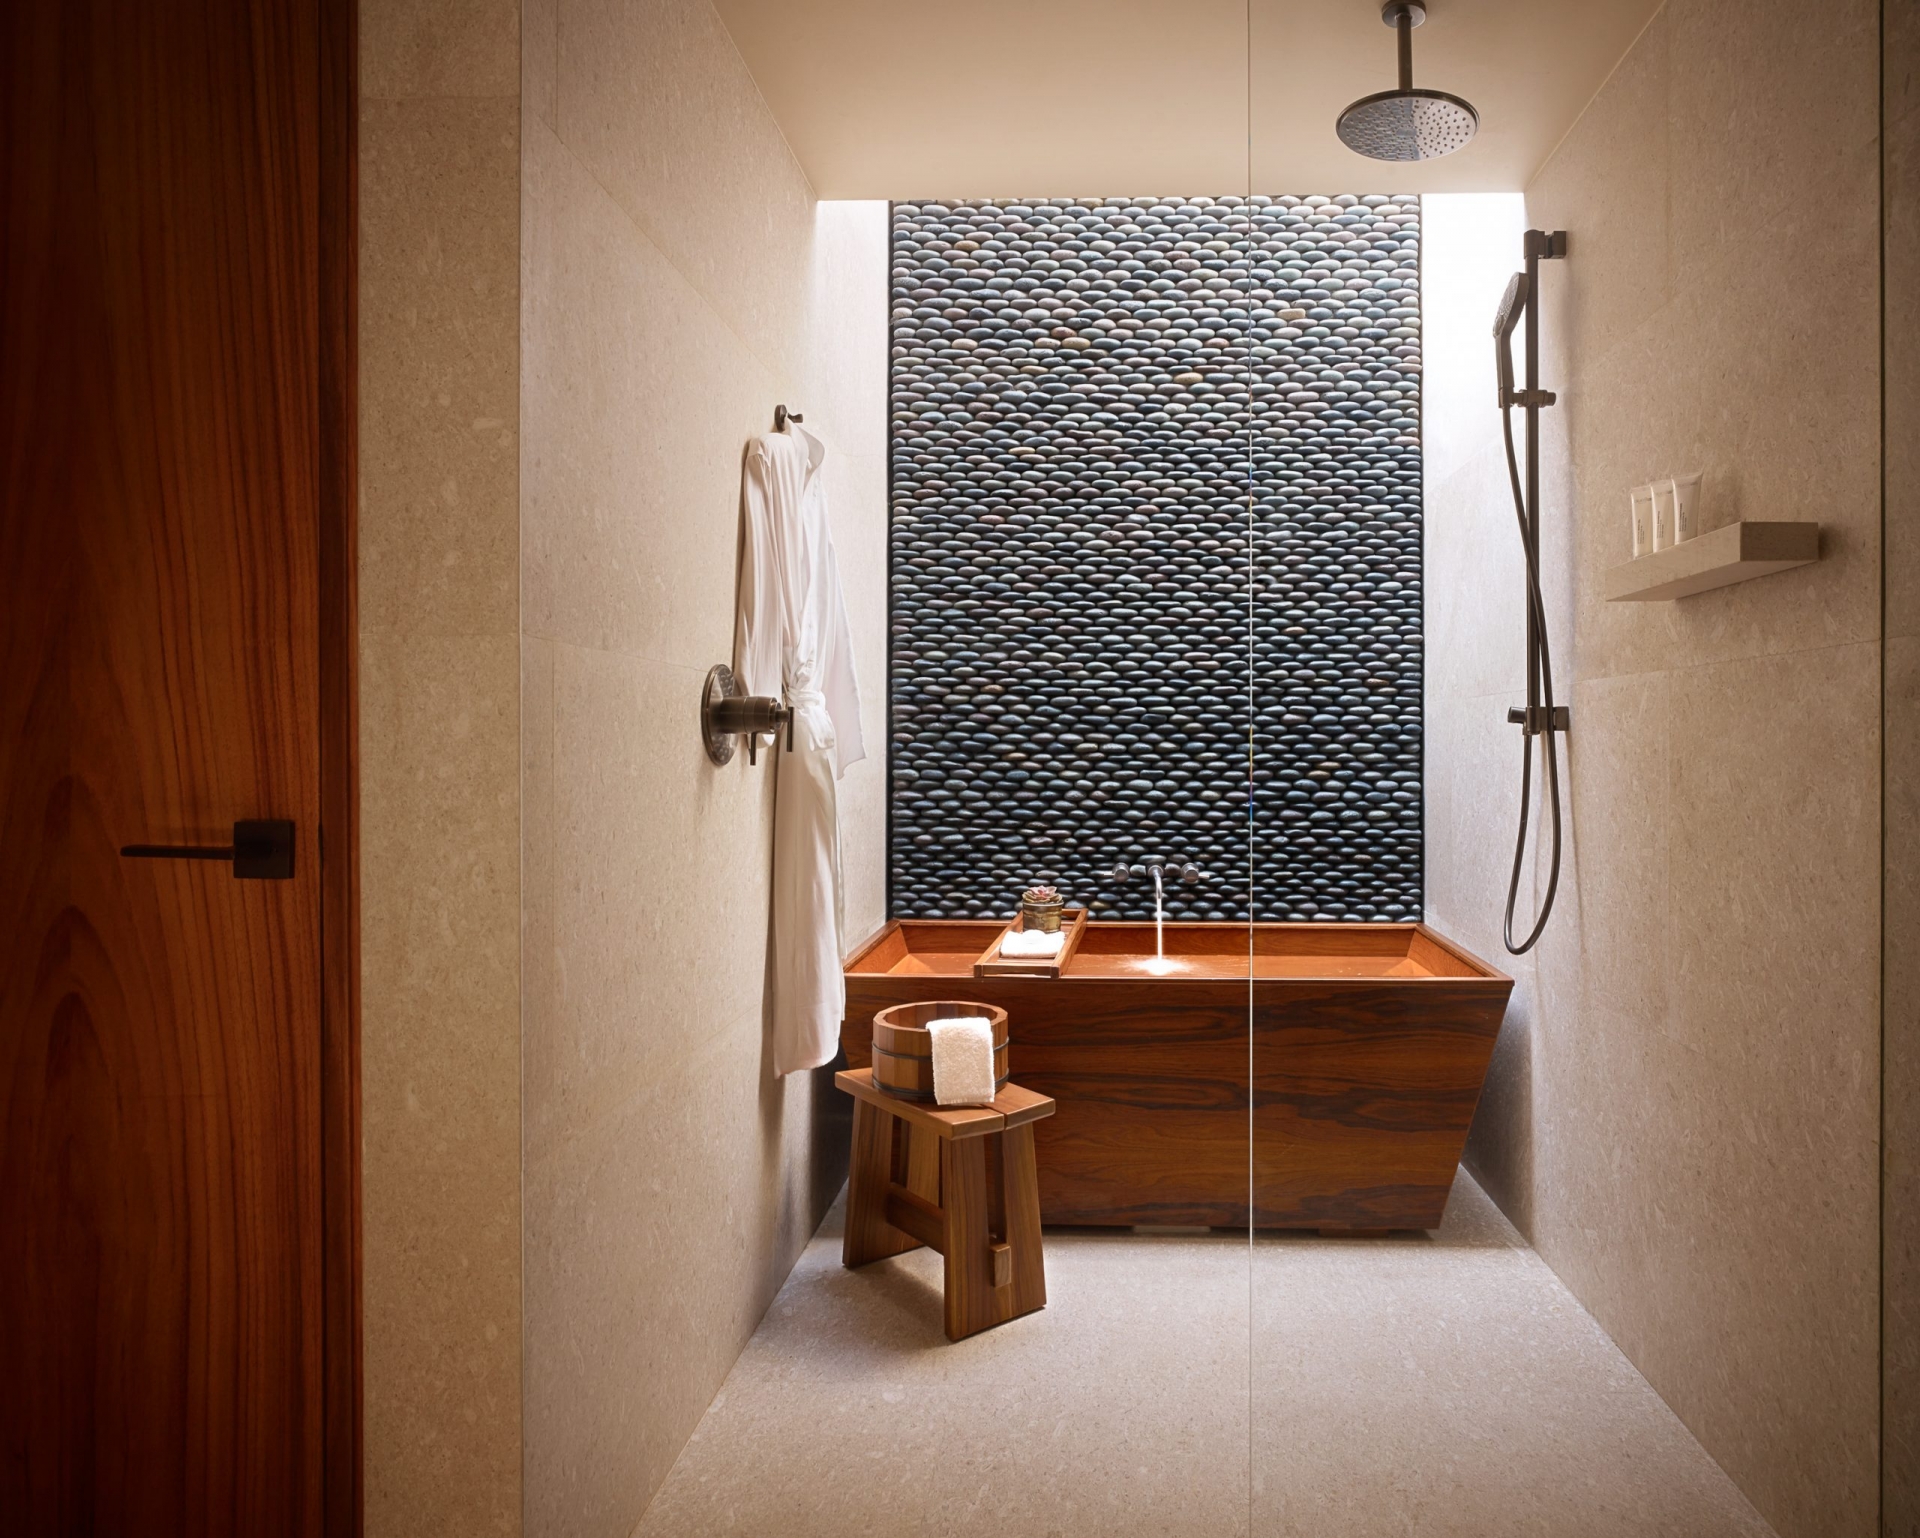 Và bây giờ sẽ là sự kết hợp của 3 vật liệu trong một không gian. Bao gồm gỗ cho bồn tắm và ghế ngồi kiểu Nhật, gạch lát sàn và ốp tường màu be, những viên đá cuội nhỏ gắn kết tạo nên vẻ đẹp độc đáo cho bức tường phòng tắm.